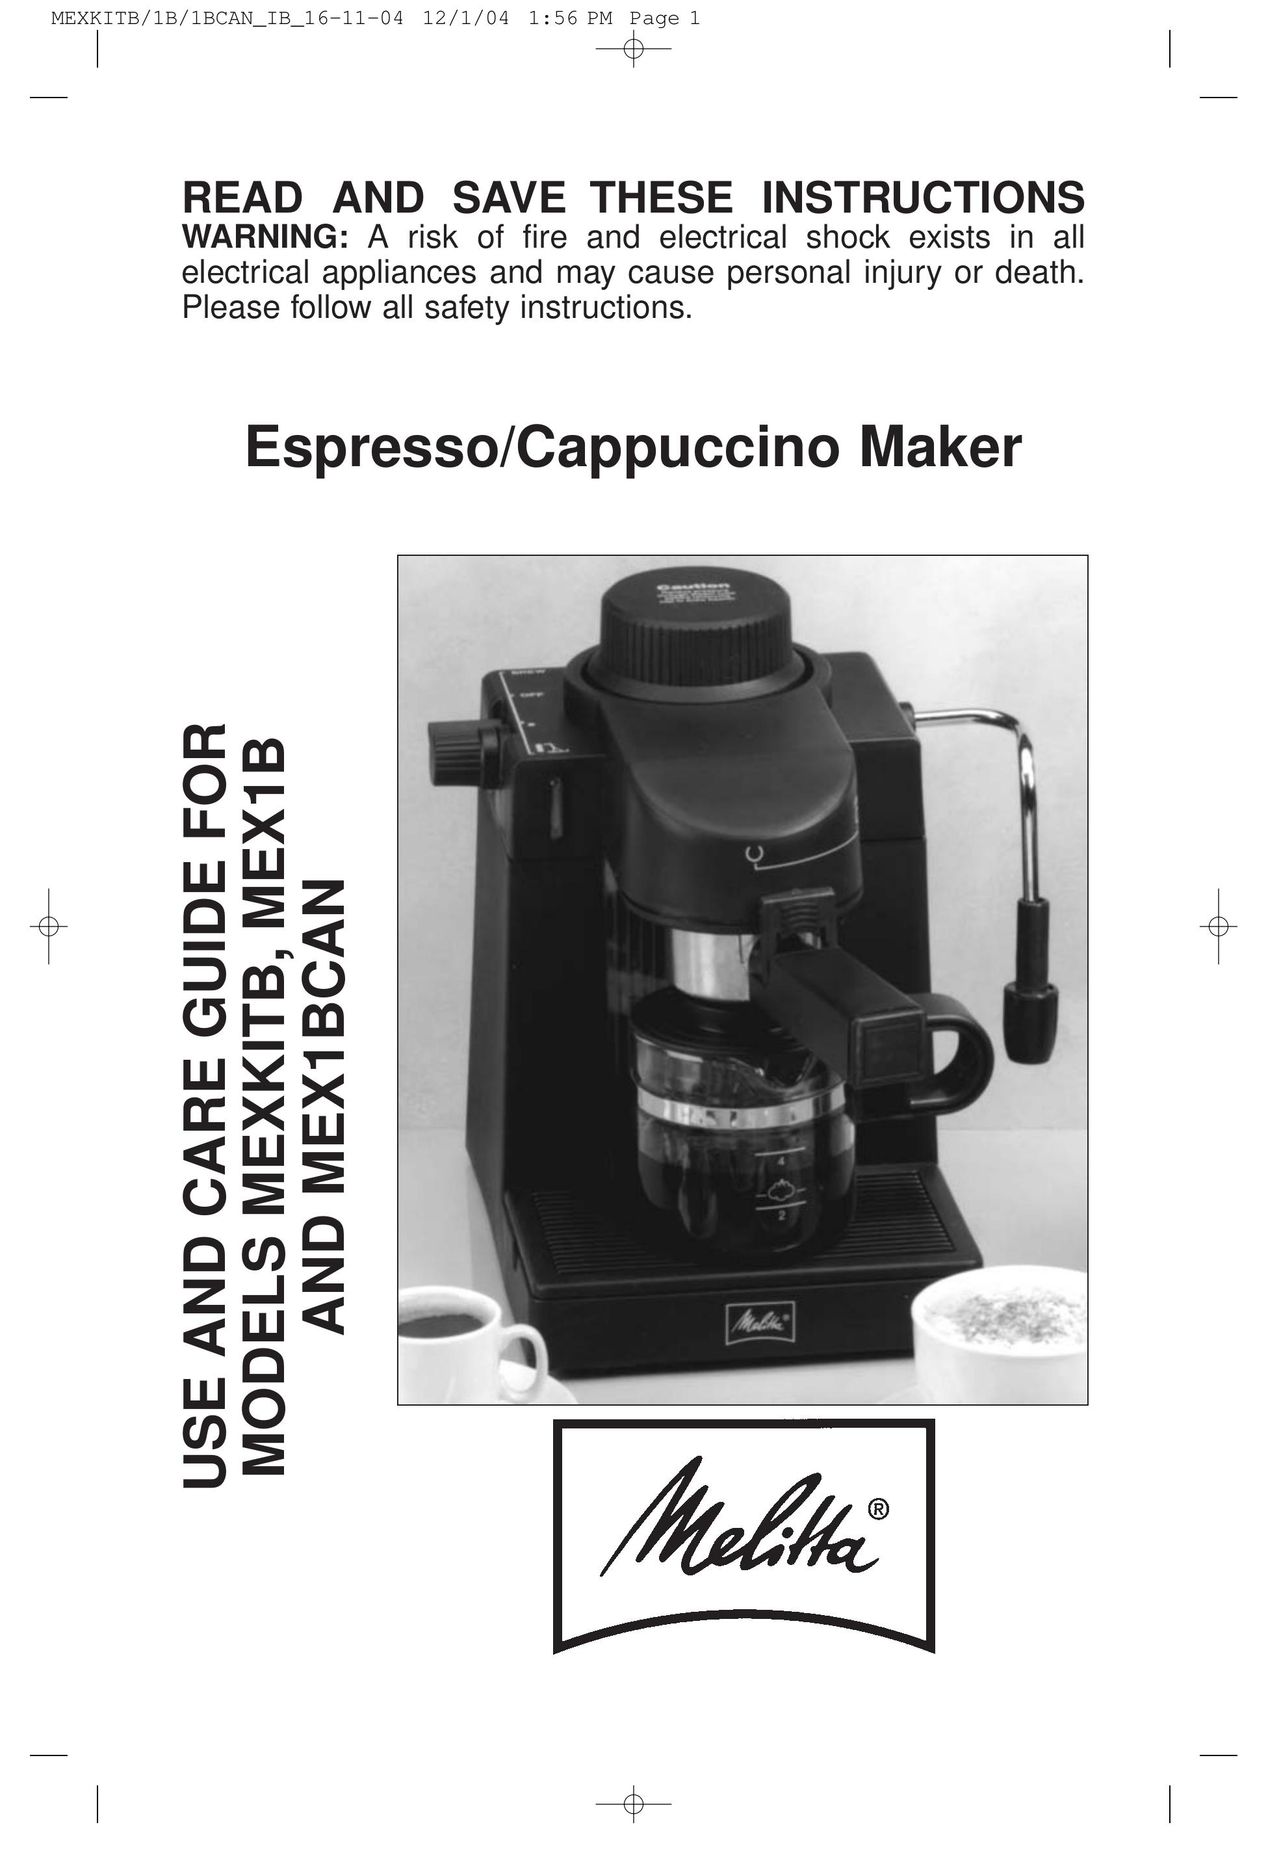 Toastmaster MEXKITB Espresso Maker User Manual